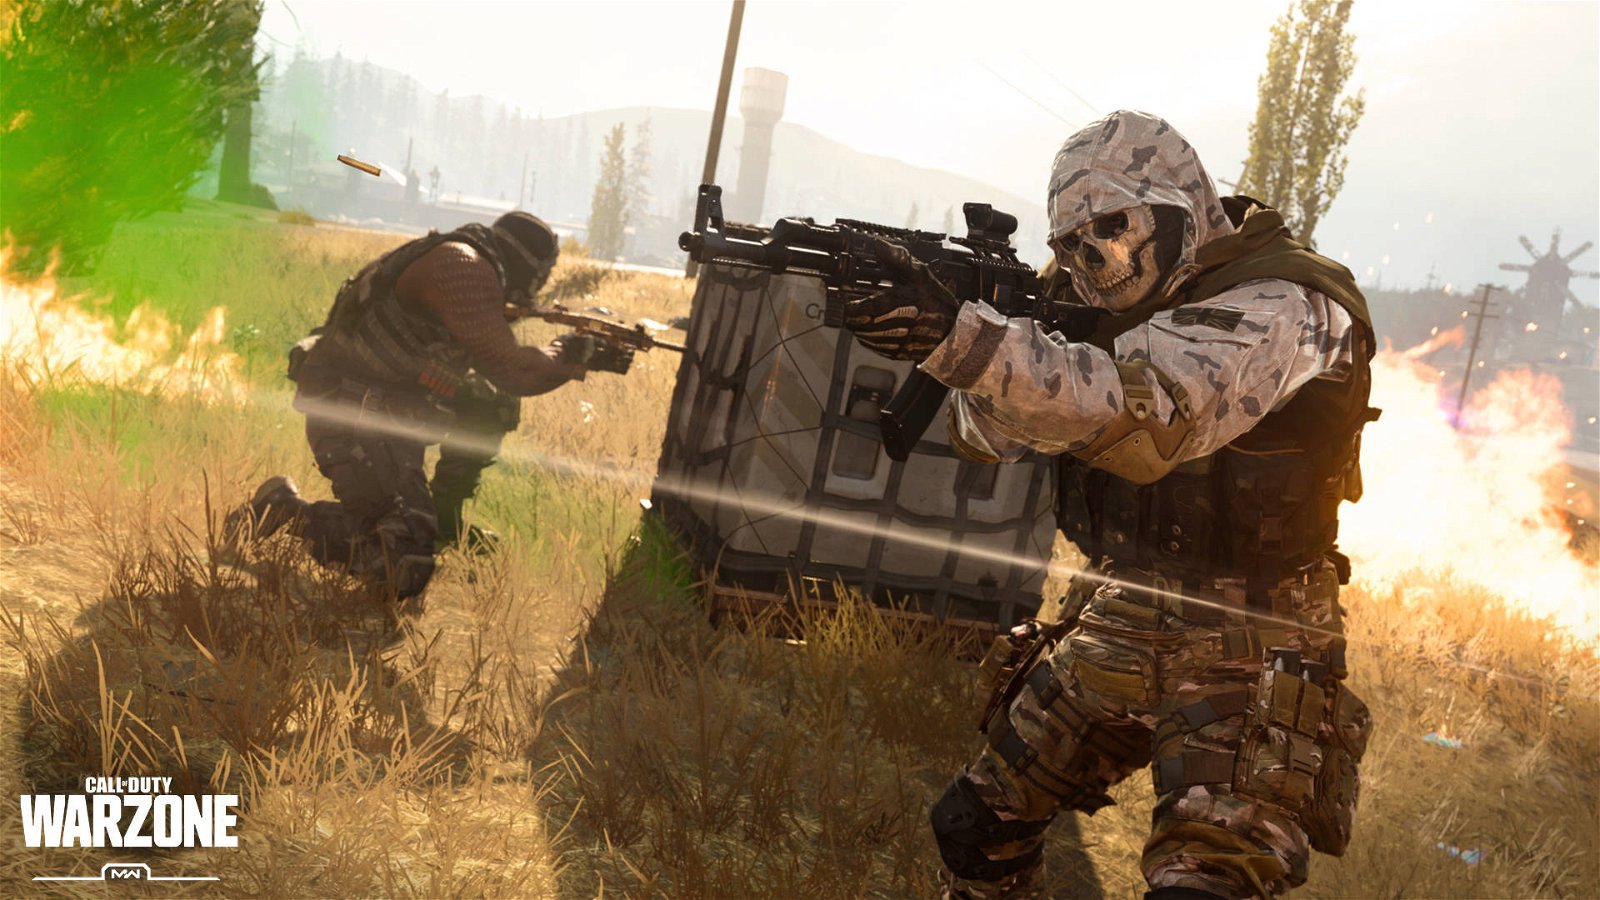 Immagine di Call of Duty Warzone: le armi automatiche del Gulag non piacciono, ecco le principali critiche dei fan